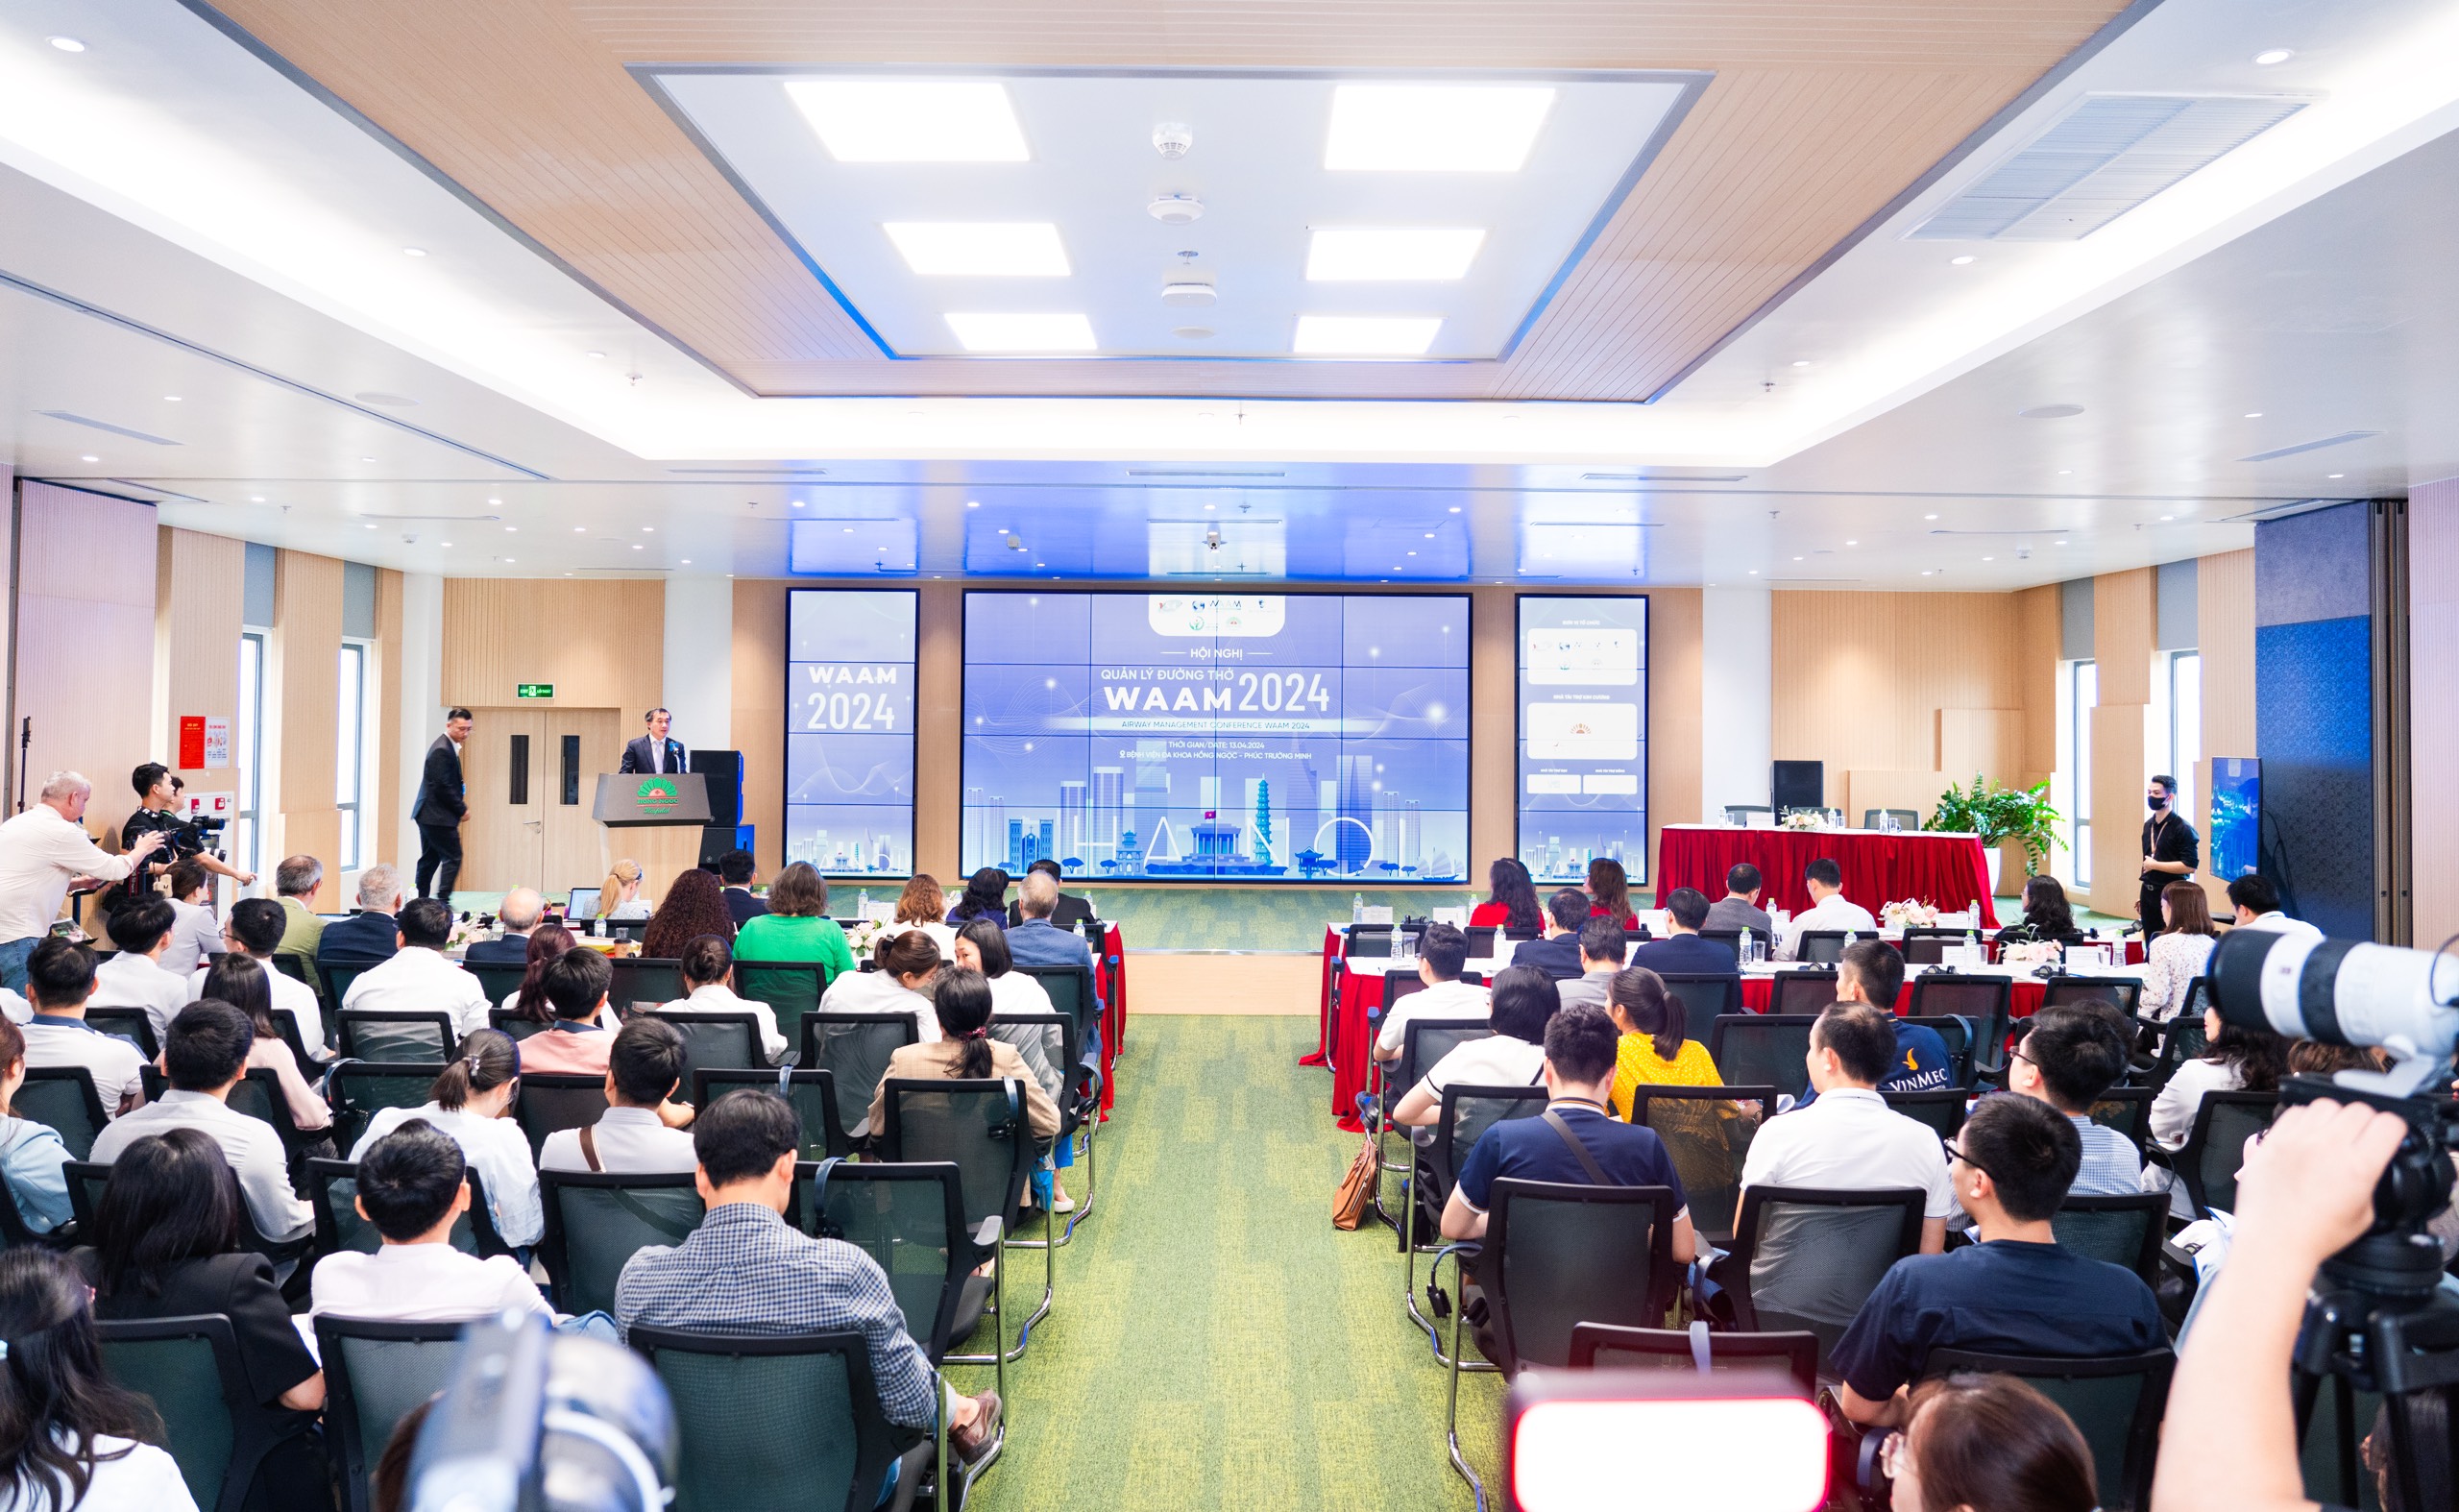 Nhiều kỹ thuật cao được chia sẻ tại Hội nghị Quản lý đường thở lần đầu tiên tổ chức tại Việt Nam- Ảnh 3.